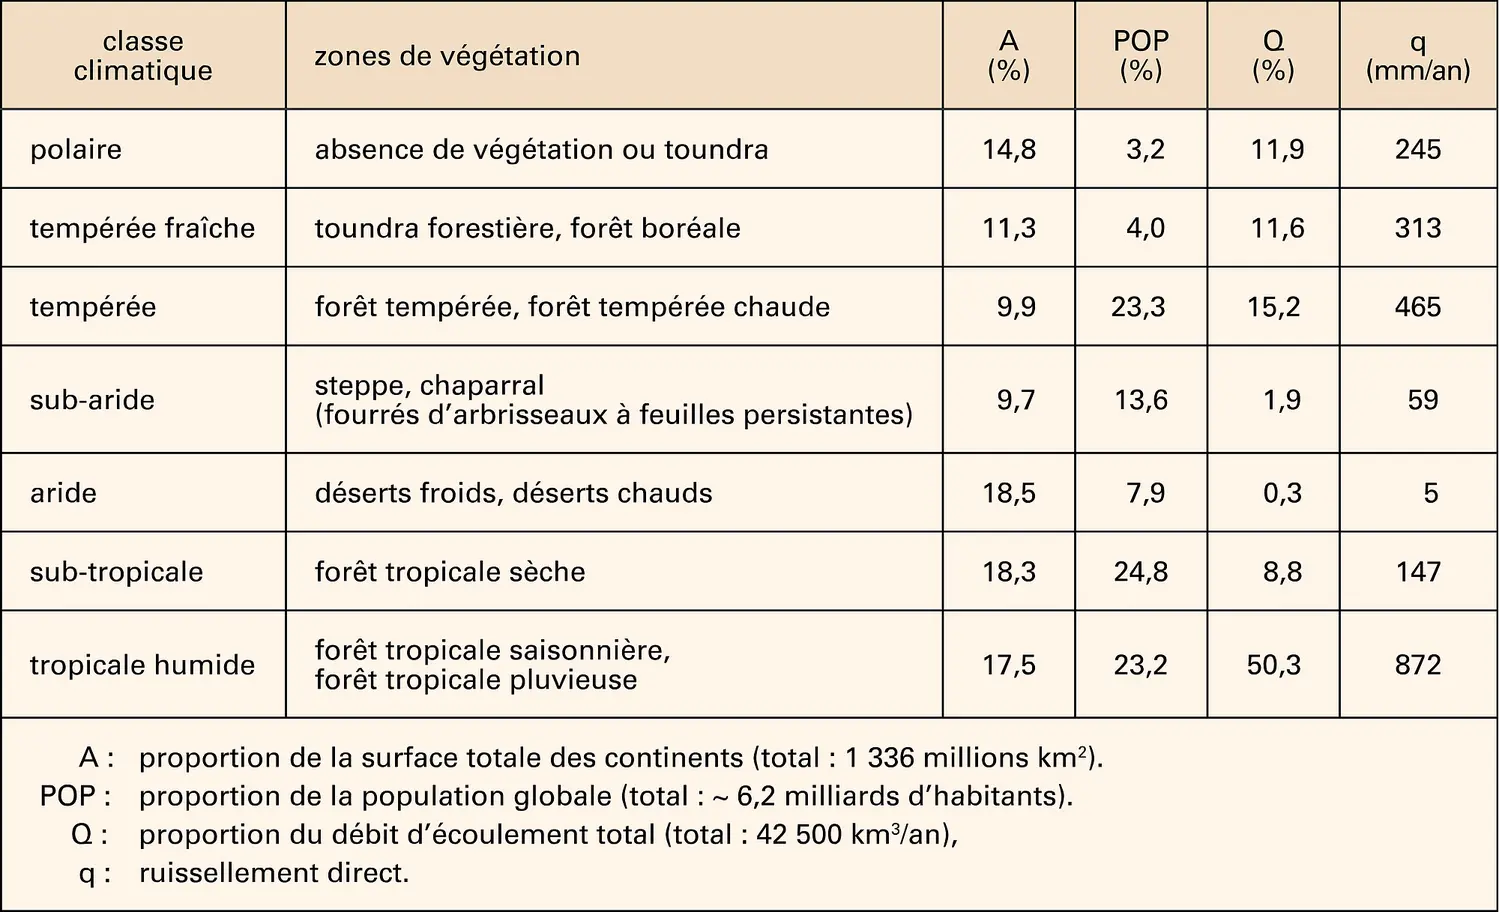 Classification des climats et des zones de végétation